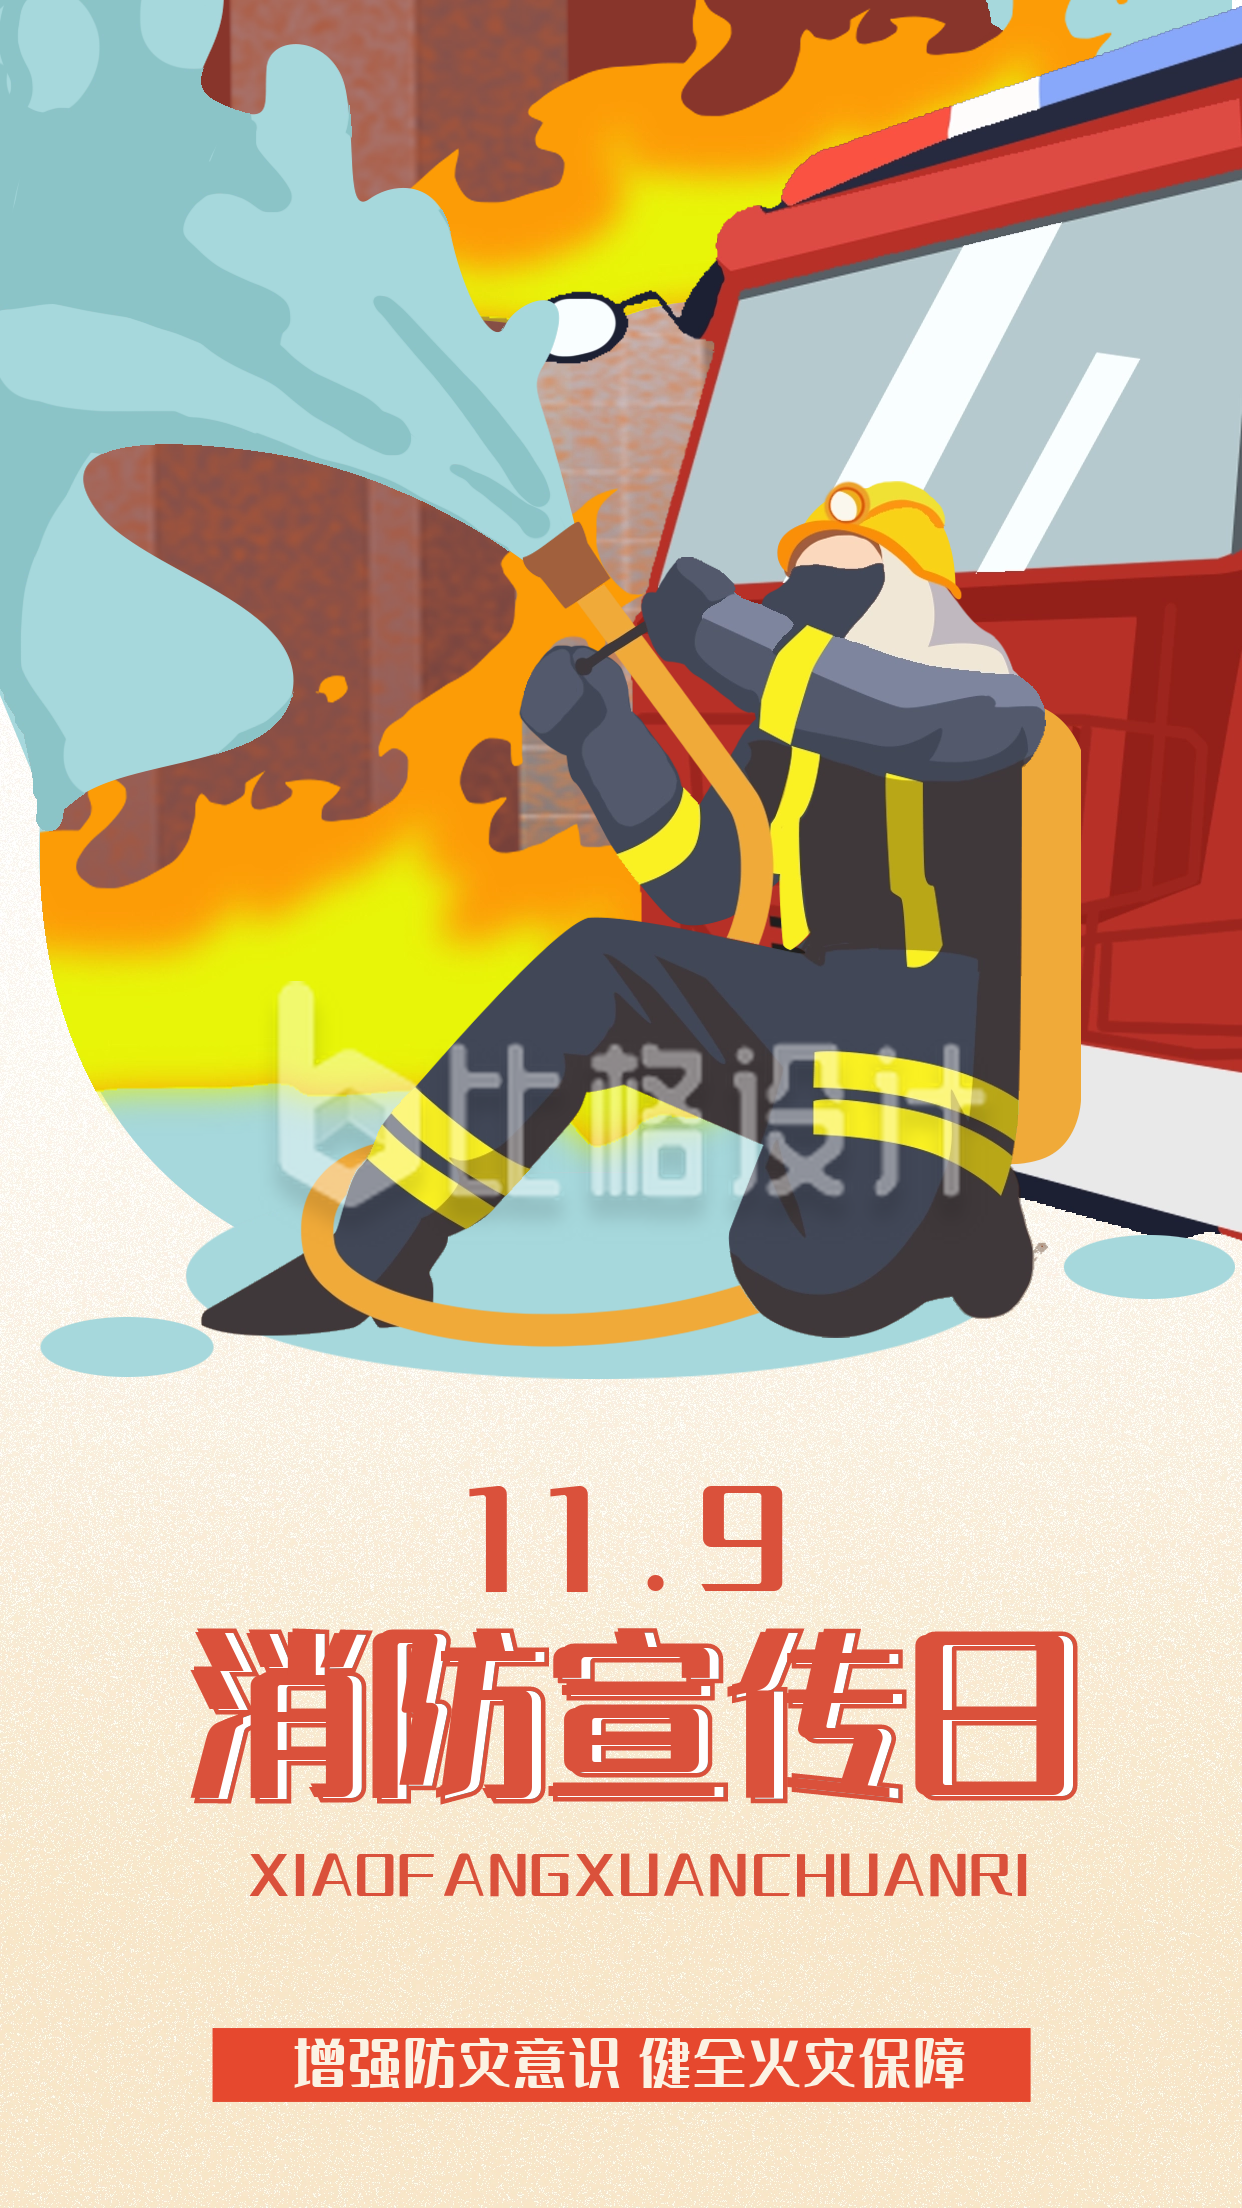 119消防日安全用火宣传海报